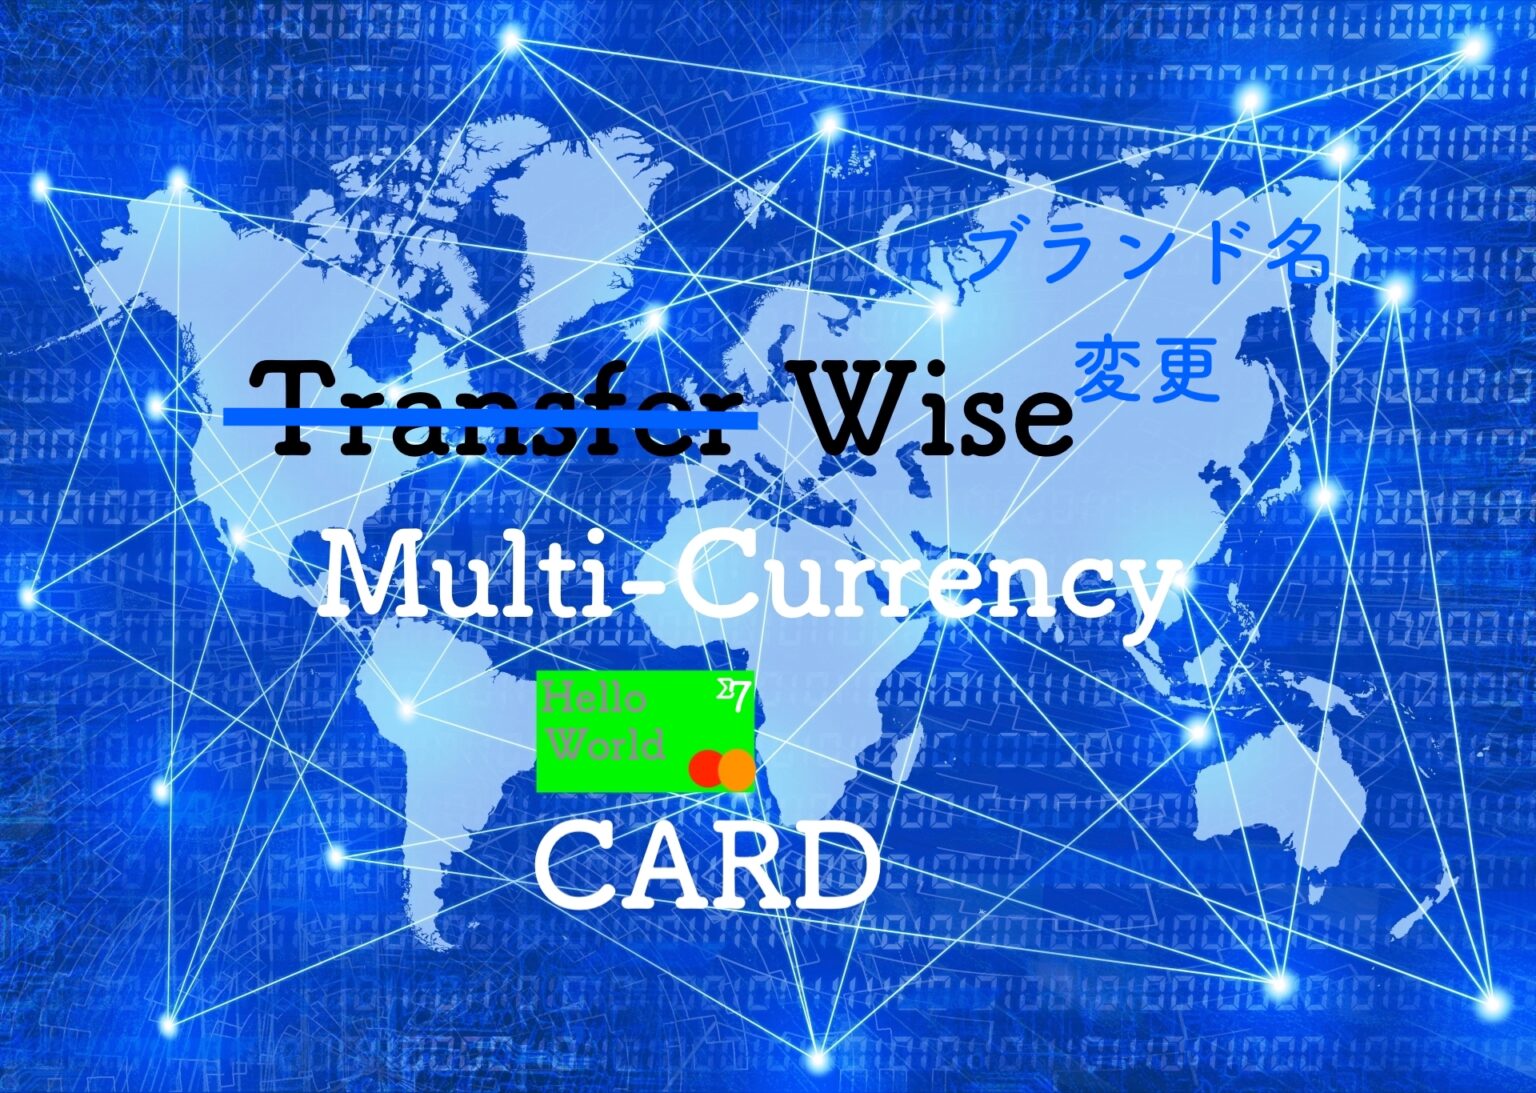 手数料無料で50カ国以上の通貨を保有 両替が可能なwiseワイズ 旧transferwise のマルチカレンシー口座の特徴と使用方法を紹介 りすの実の自然に節約ブログ